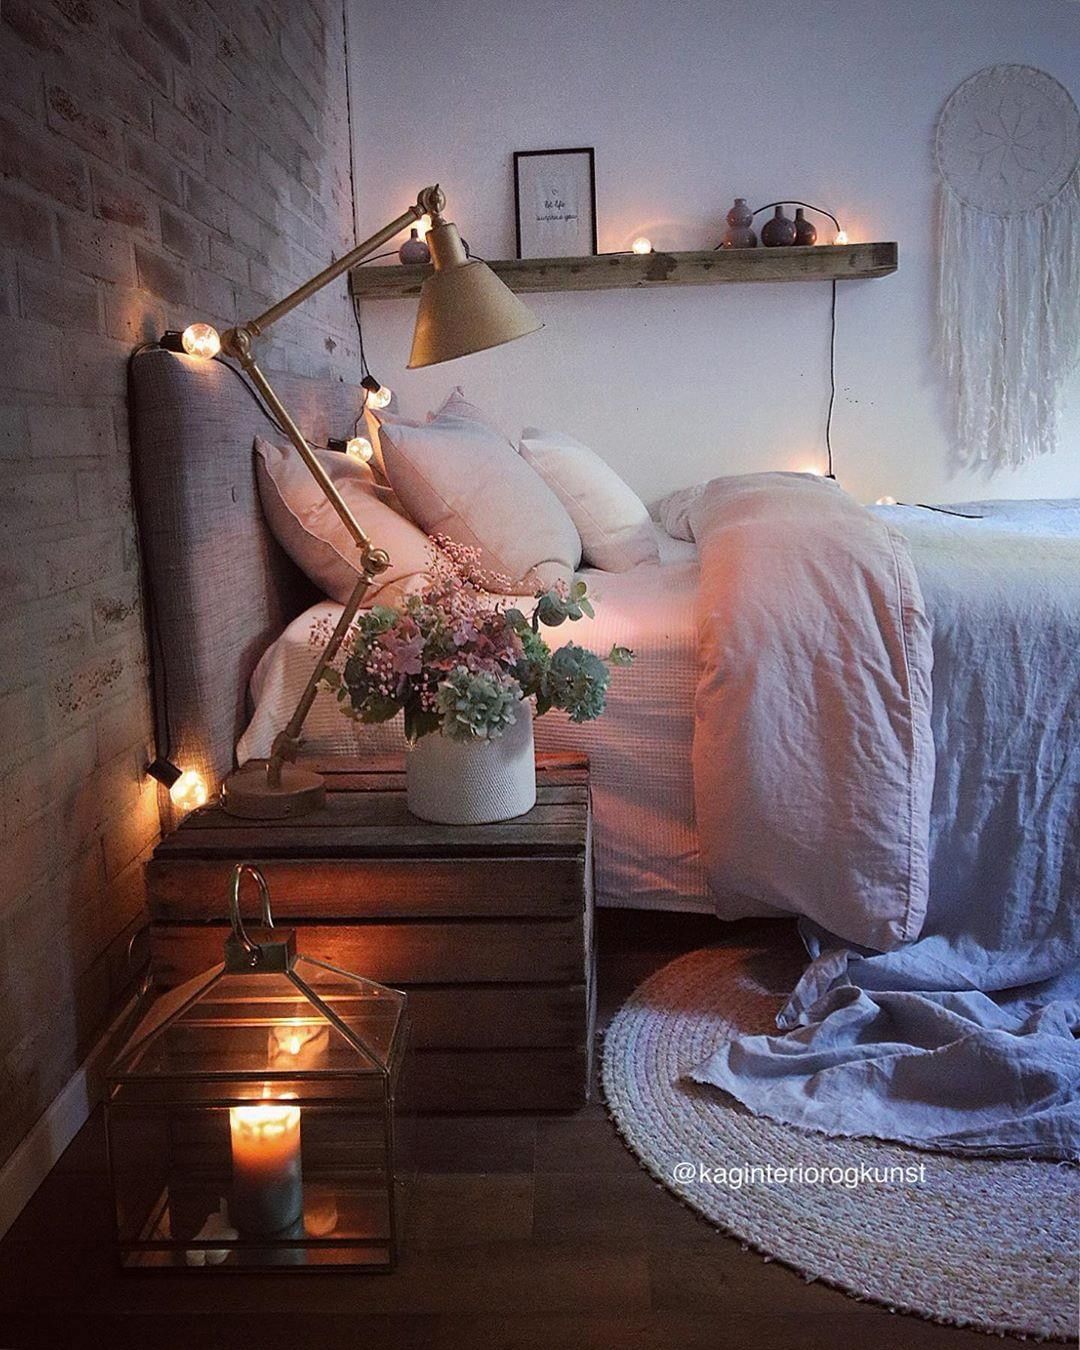 kamar instagram-ready dengan pencahayaan tepat